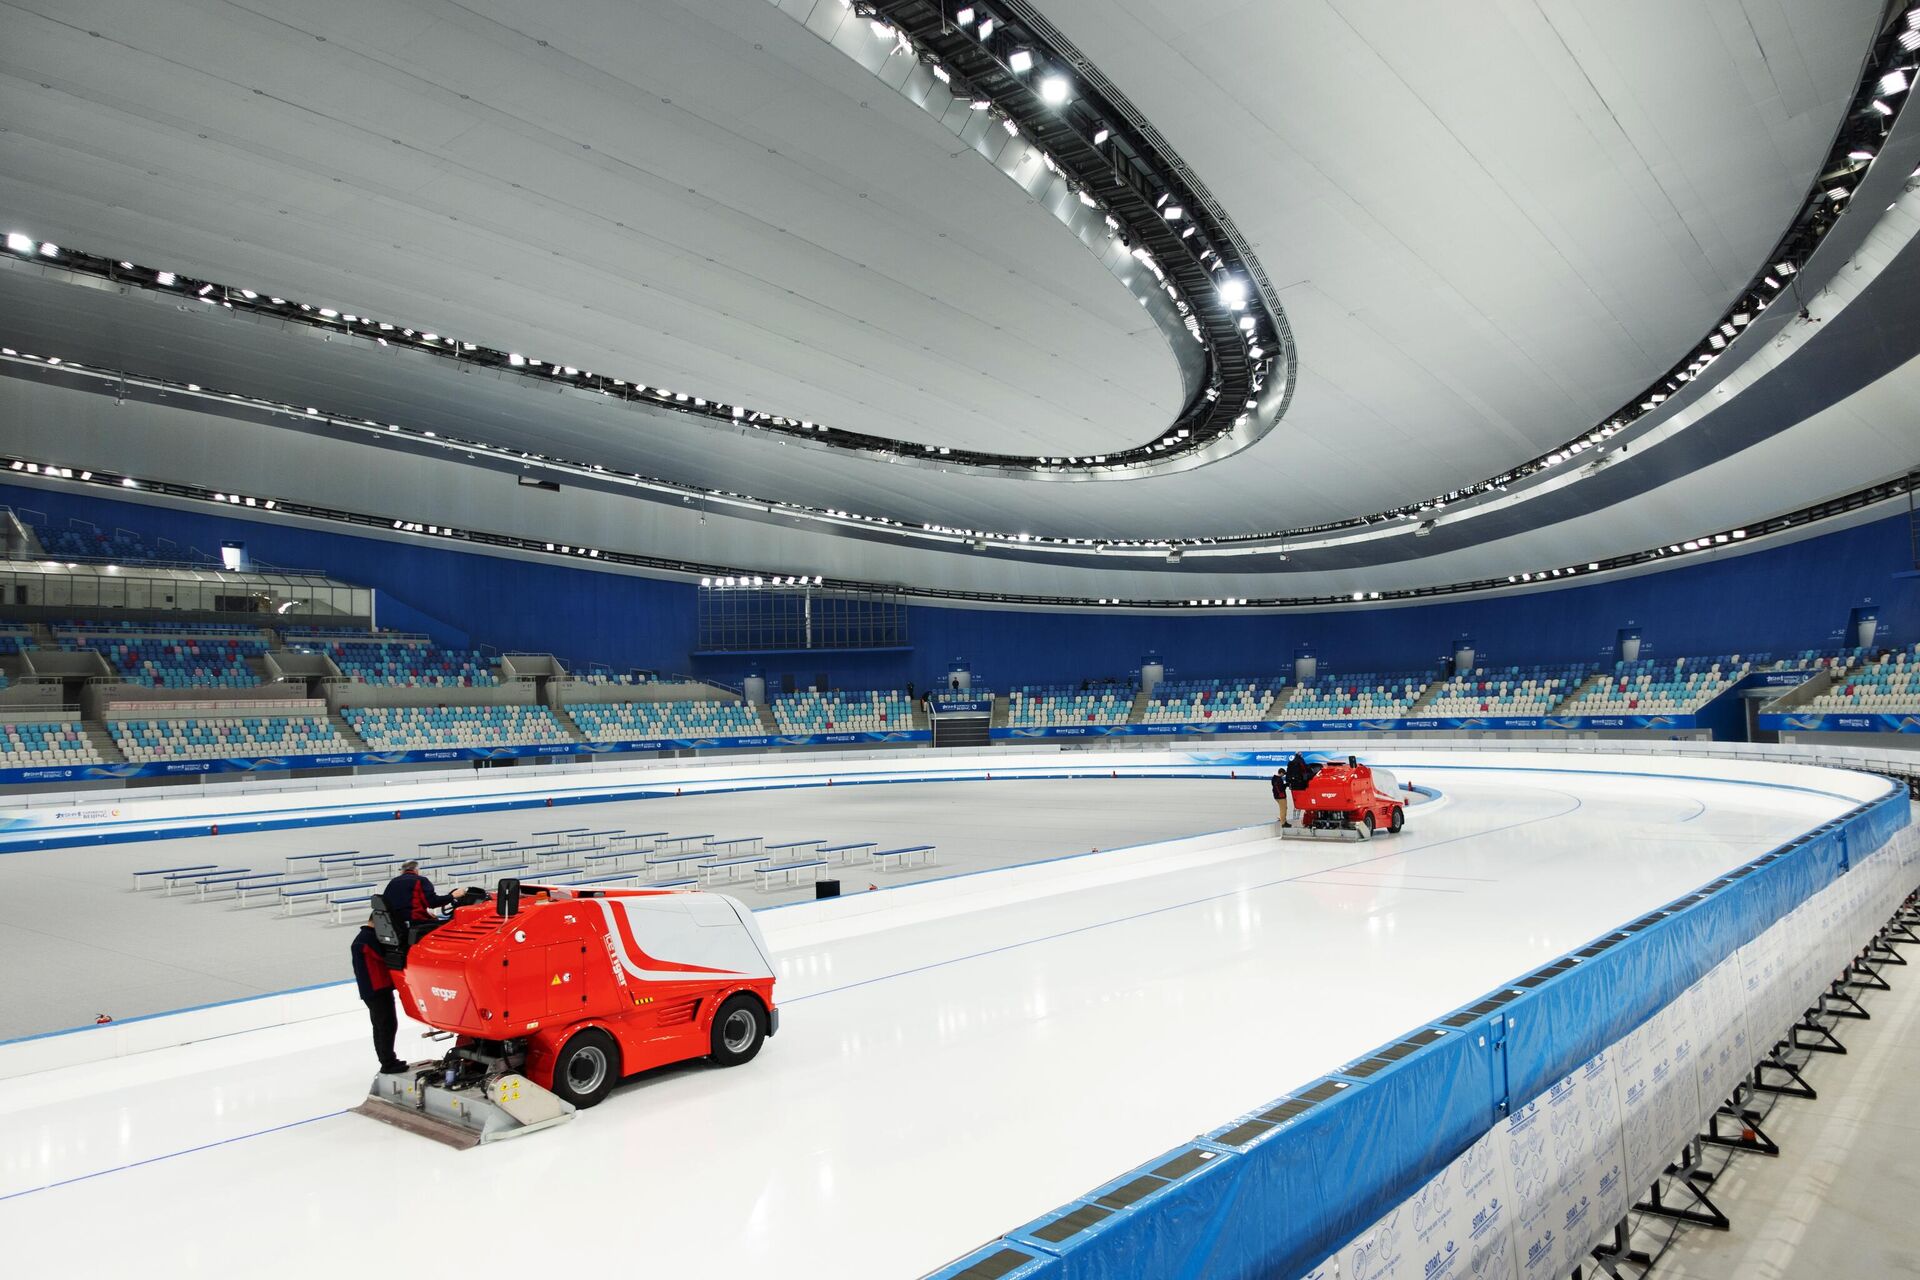 В Национальном конькобежном стадионе Овал (National Speed Skating Oval) в Пекине - РИА Новости, 1920, 02.02.2022